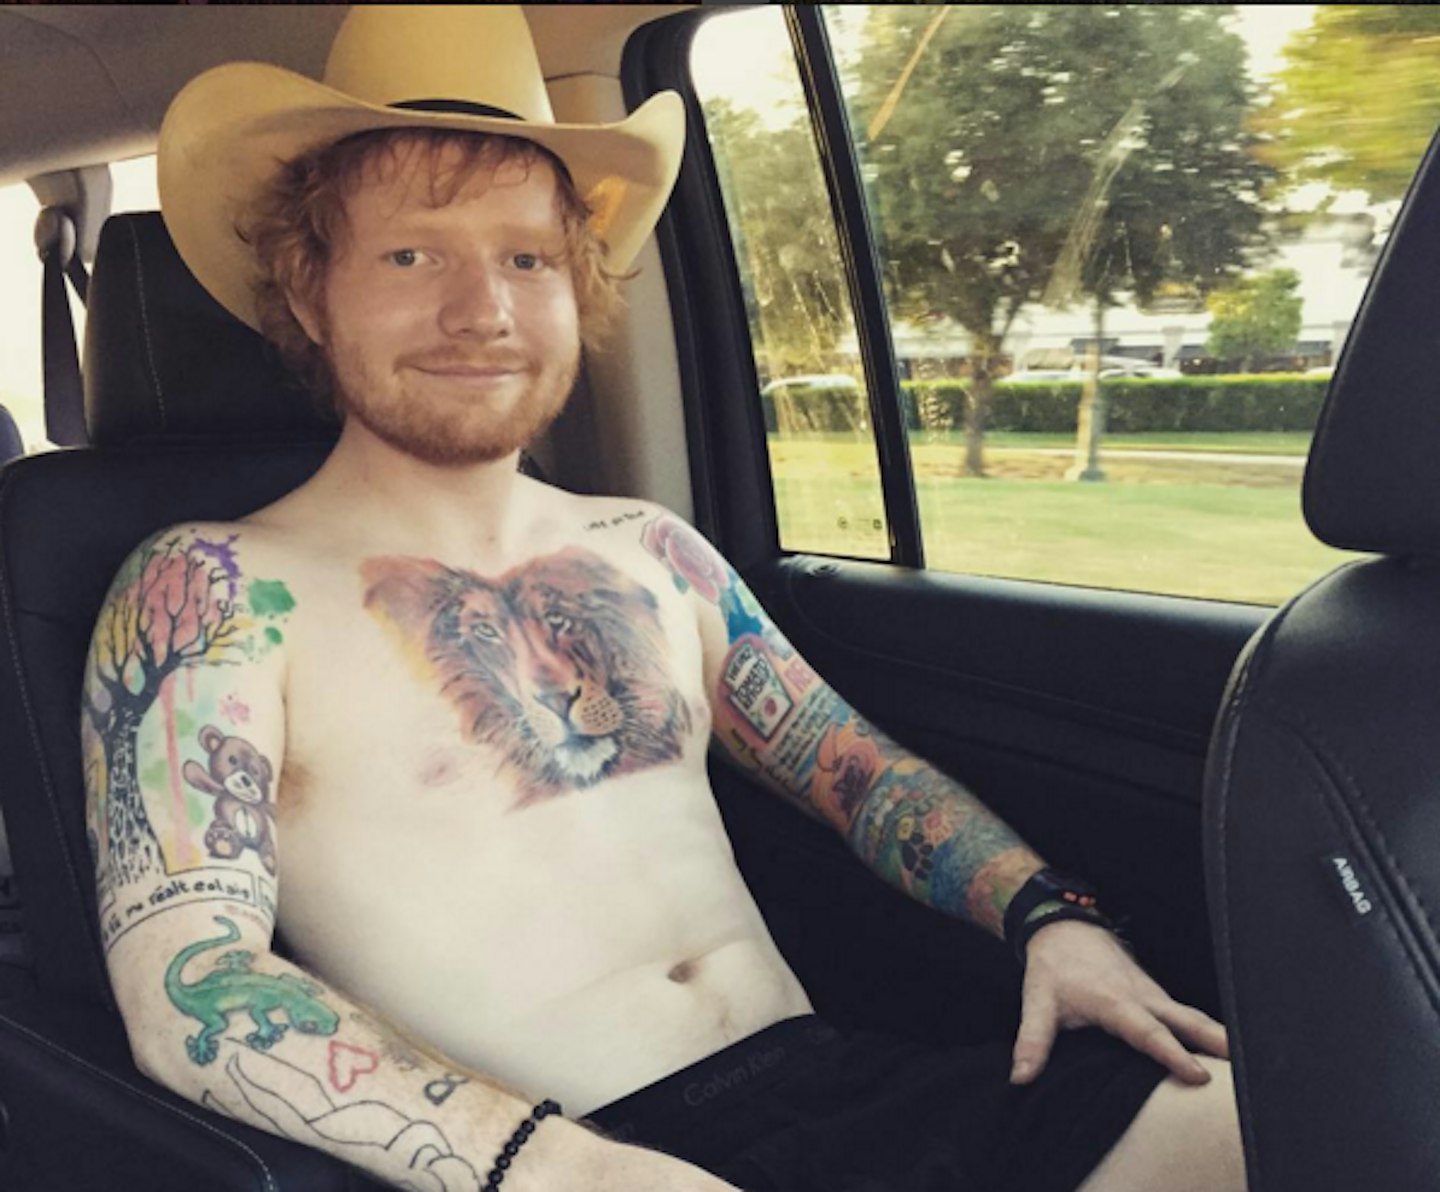 Ed Sheeran Carpool Karaoke